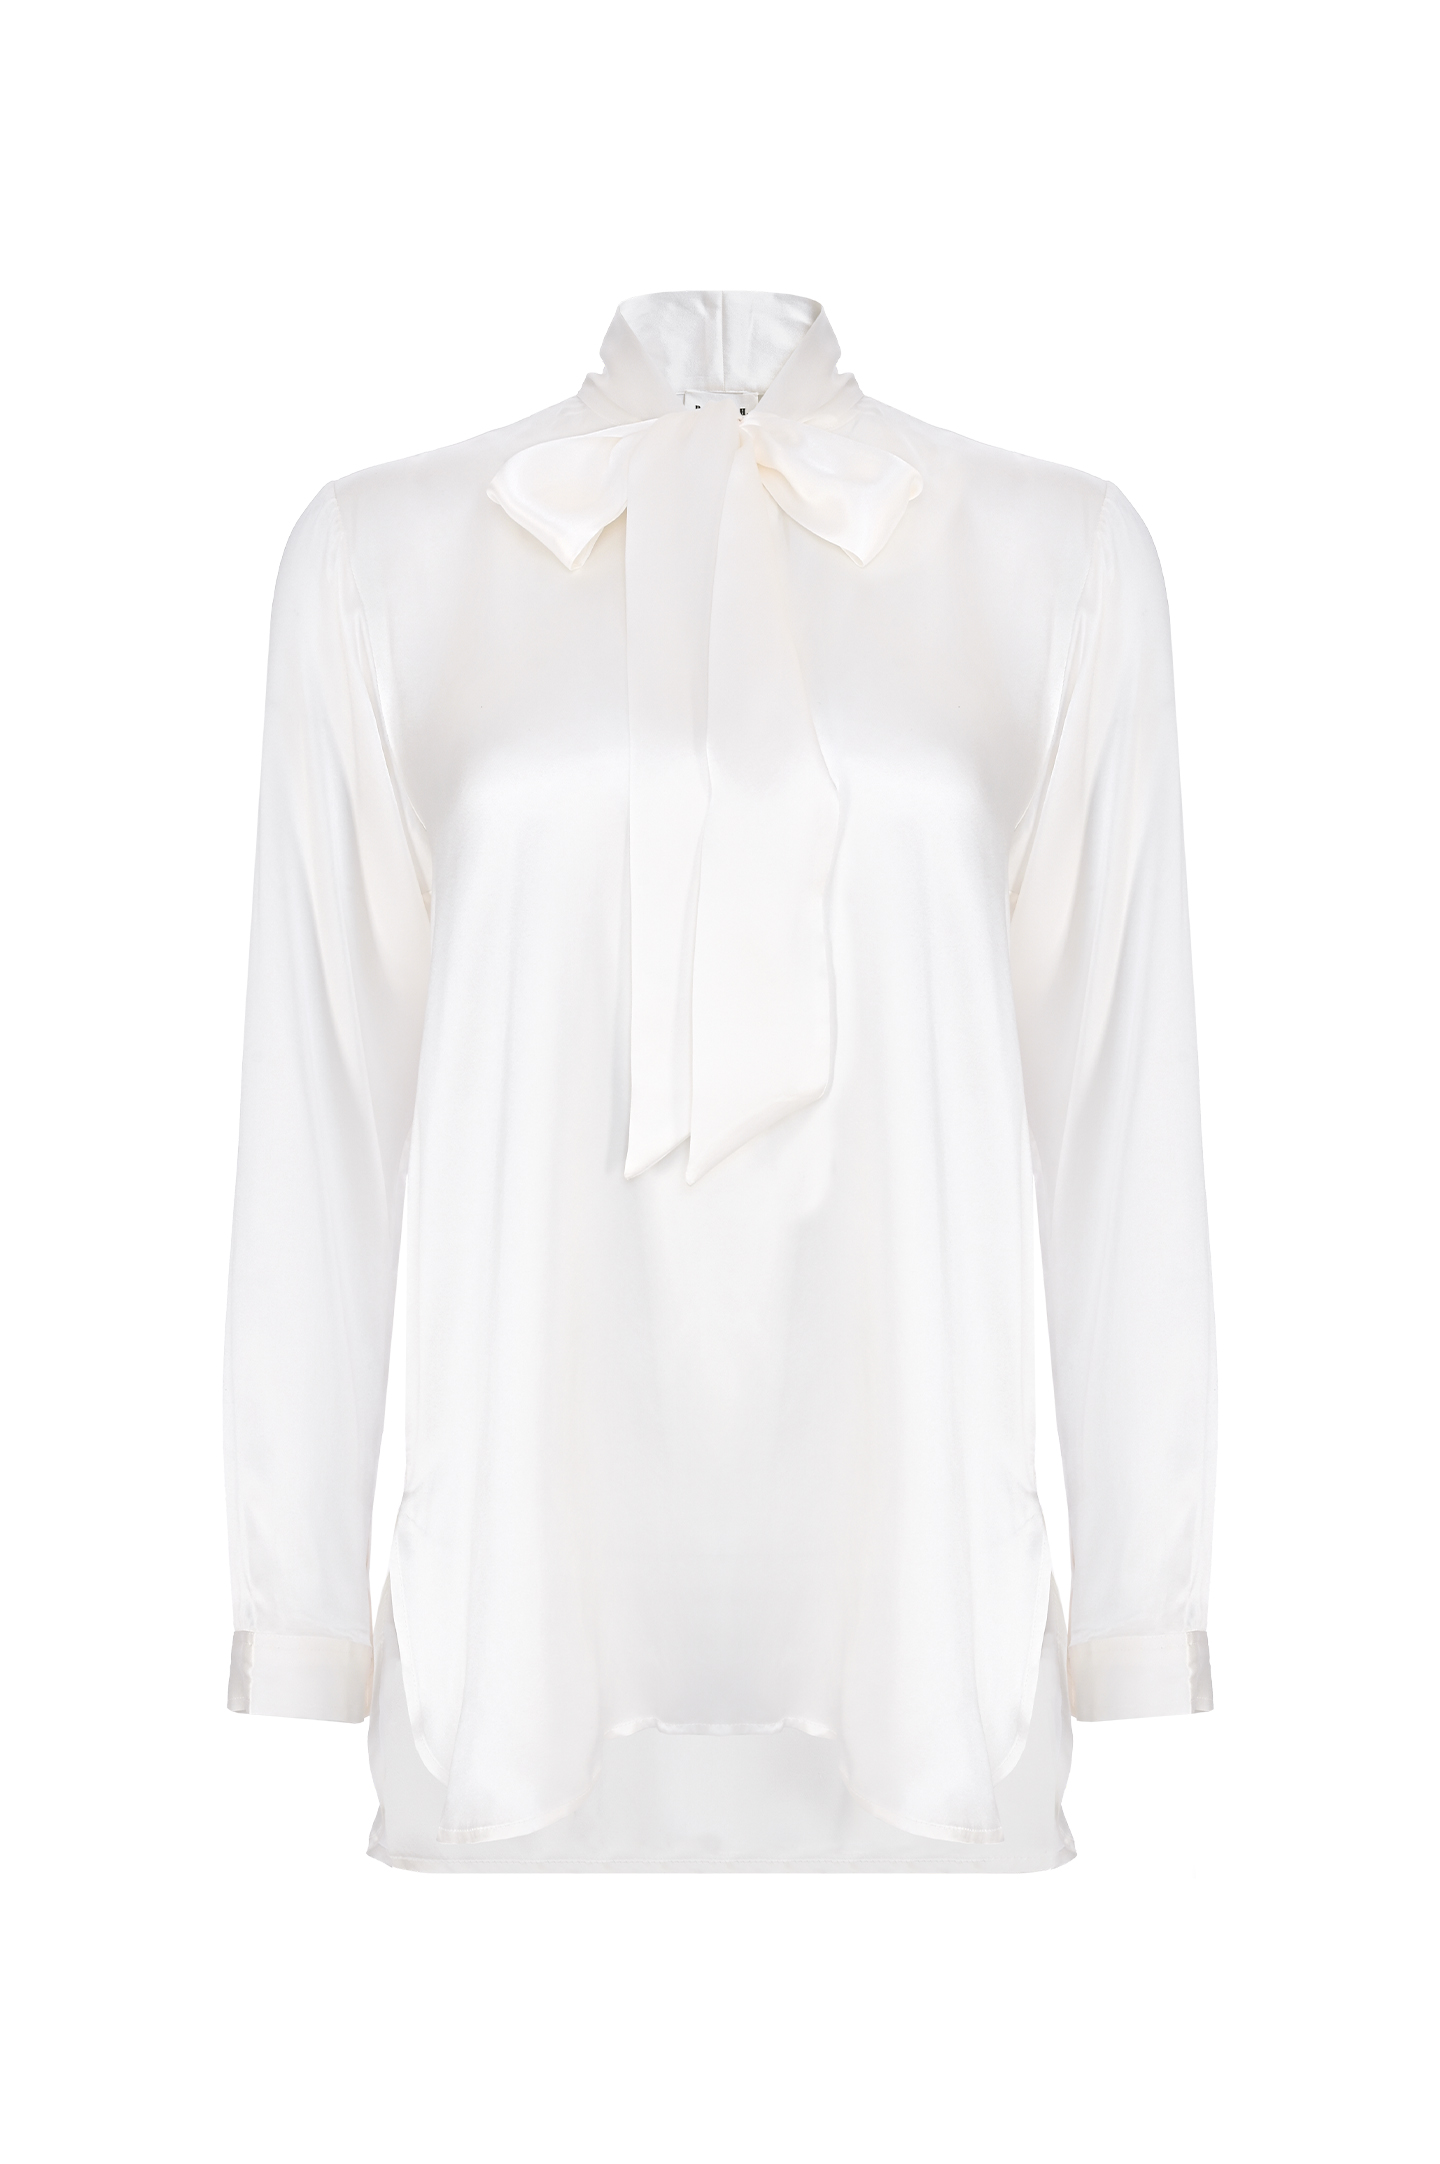 Блуза P.A.R.O.S.H. D380590-STELLA, цвет: Белый, Женский